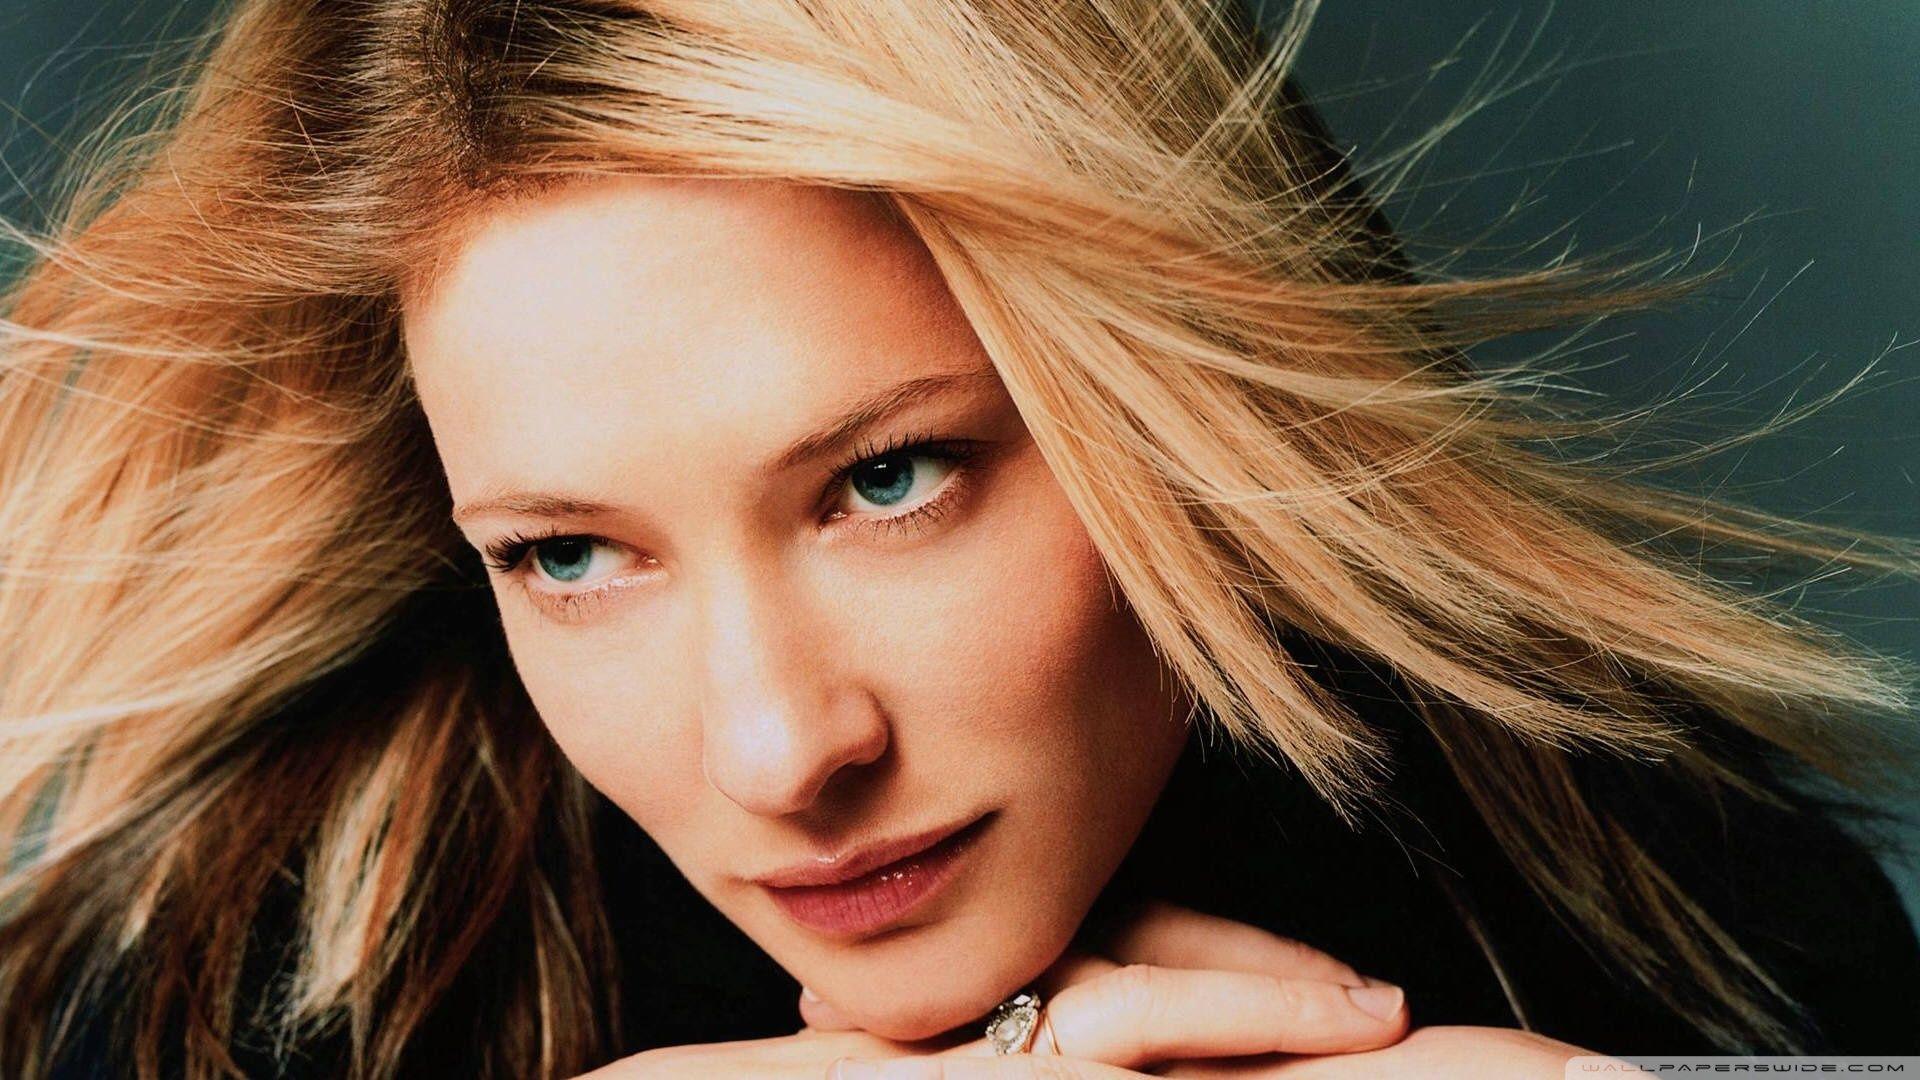 Cate Blanchett Portrait HD desktop wallpaper, Widescreen, High